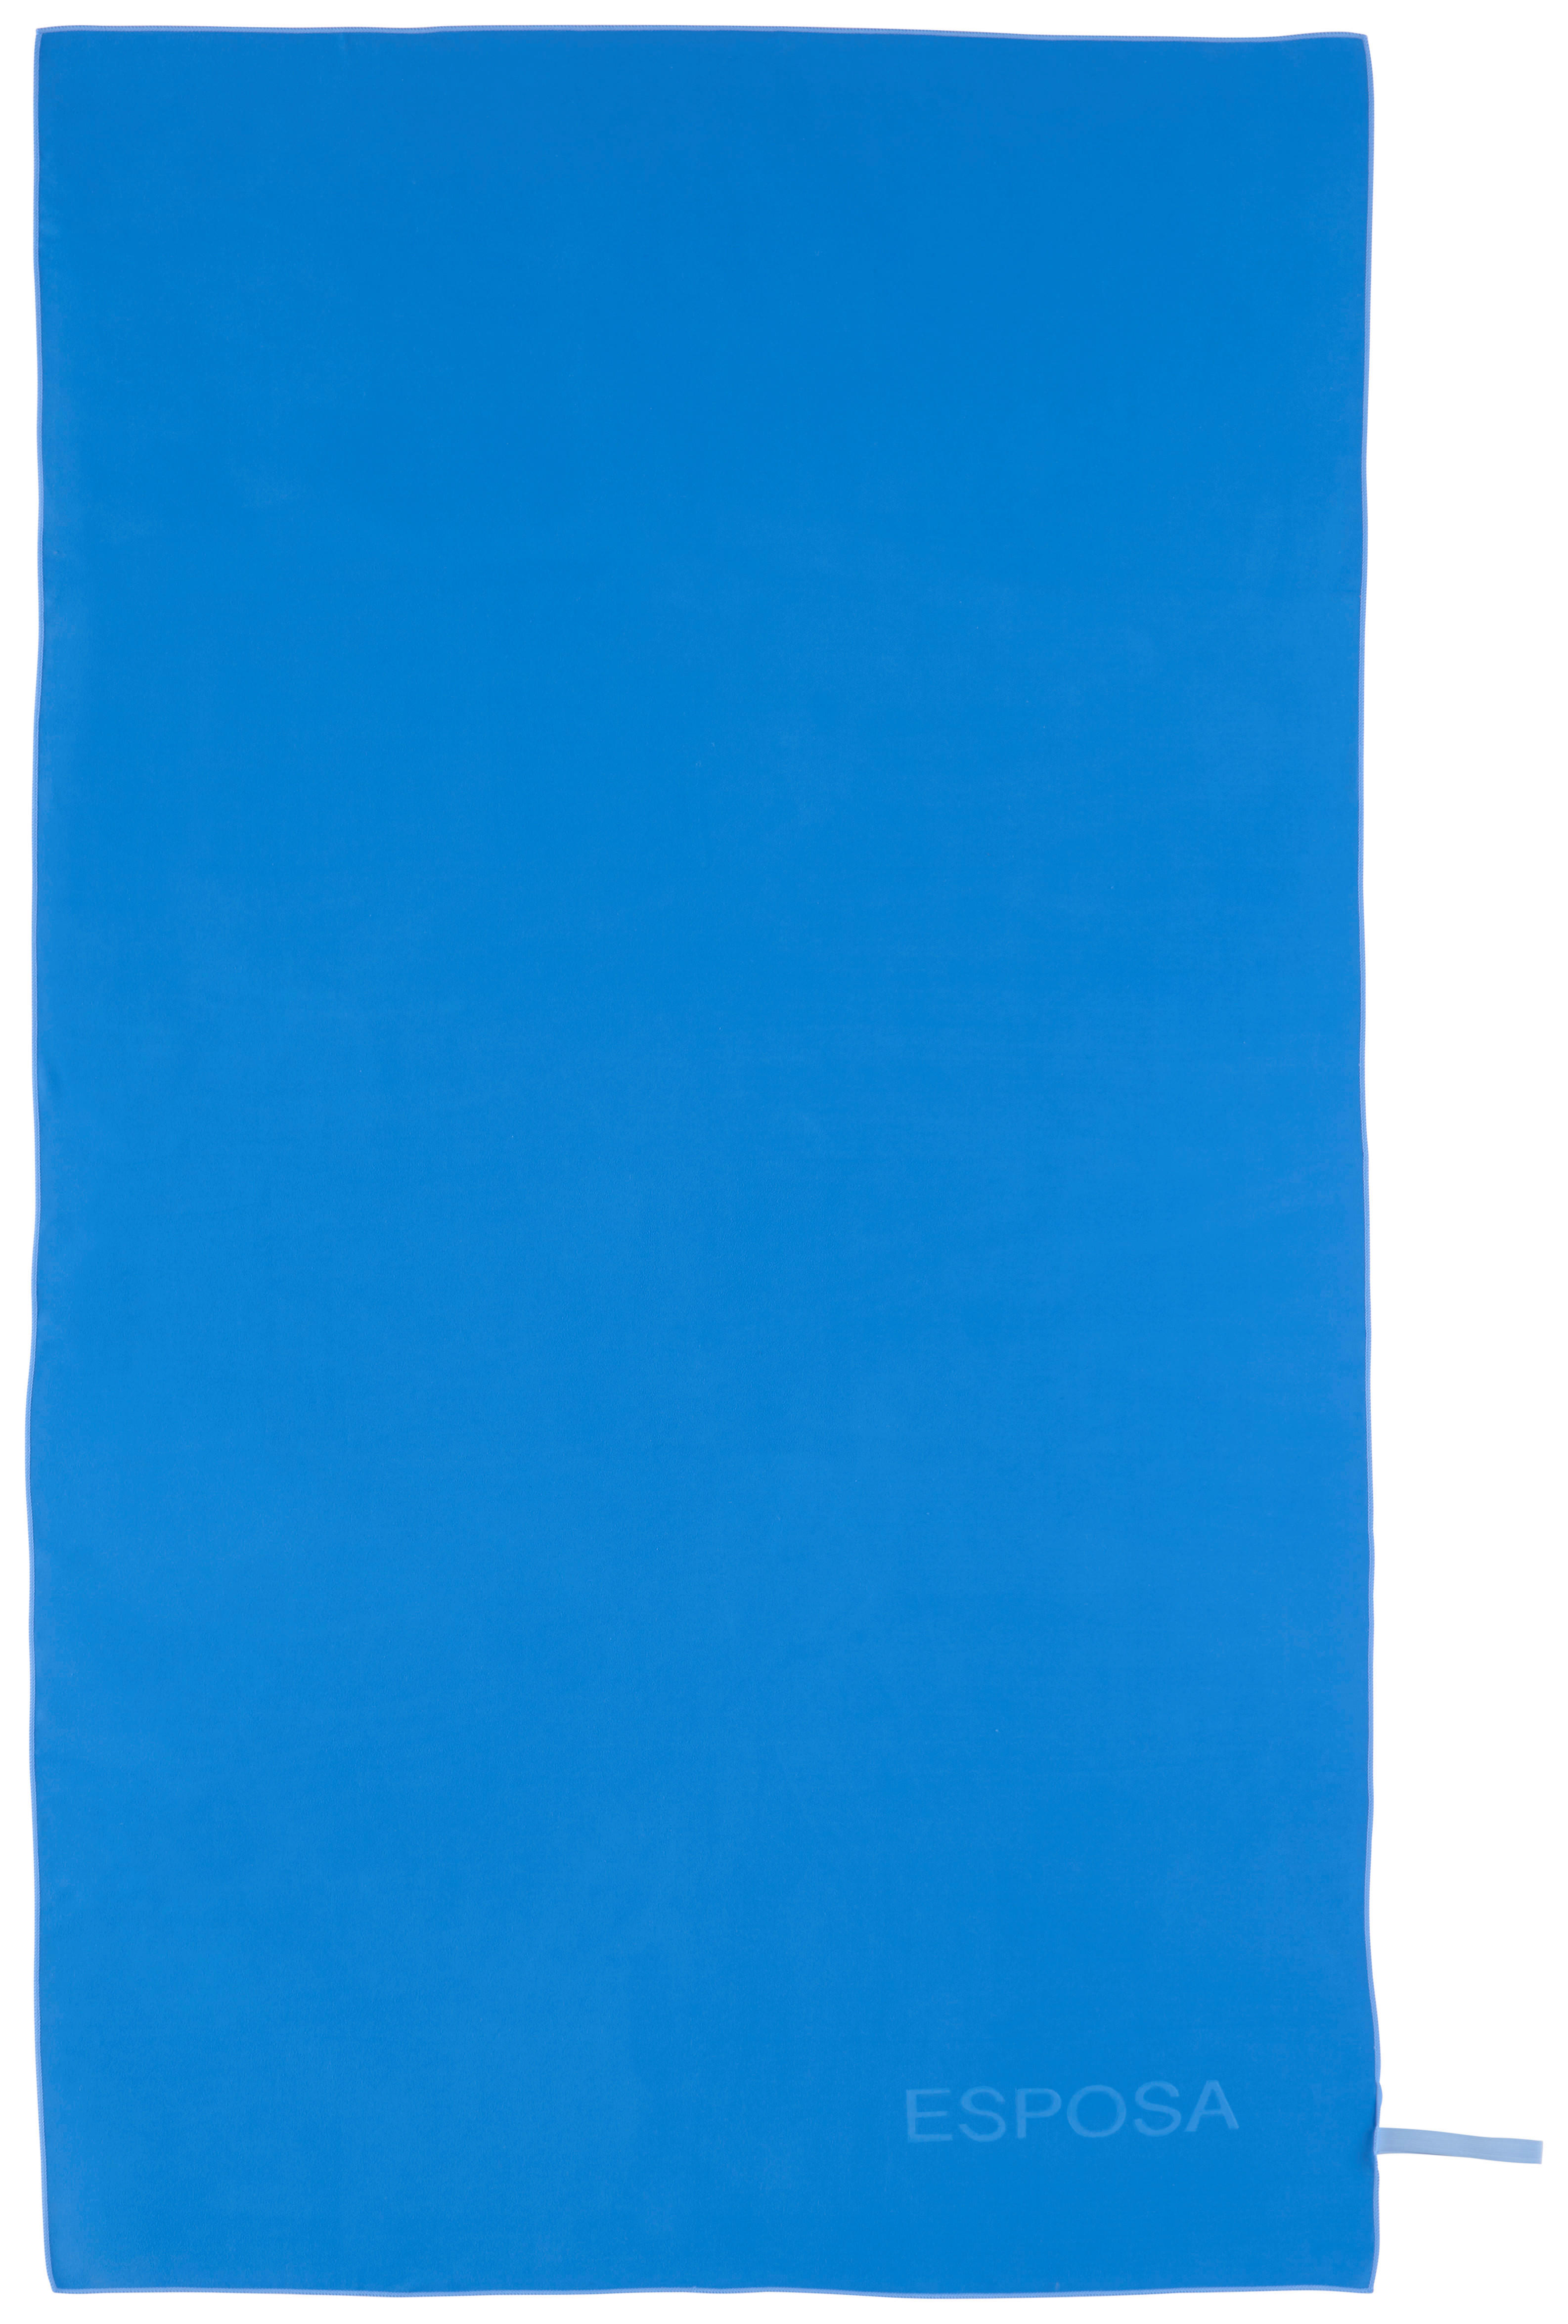 STRANDTÖRÖLKÖZŐ 100/180 cm Kék  - Kék, Konventionell, Textil (100/180cm) - Esposa